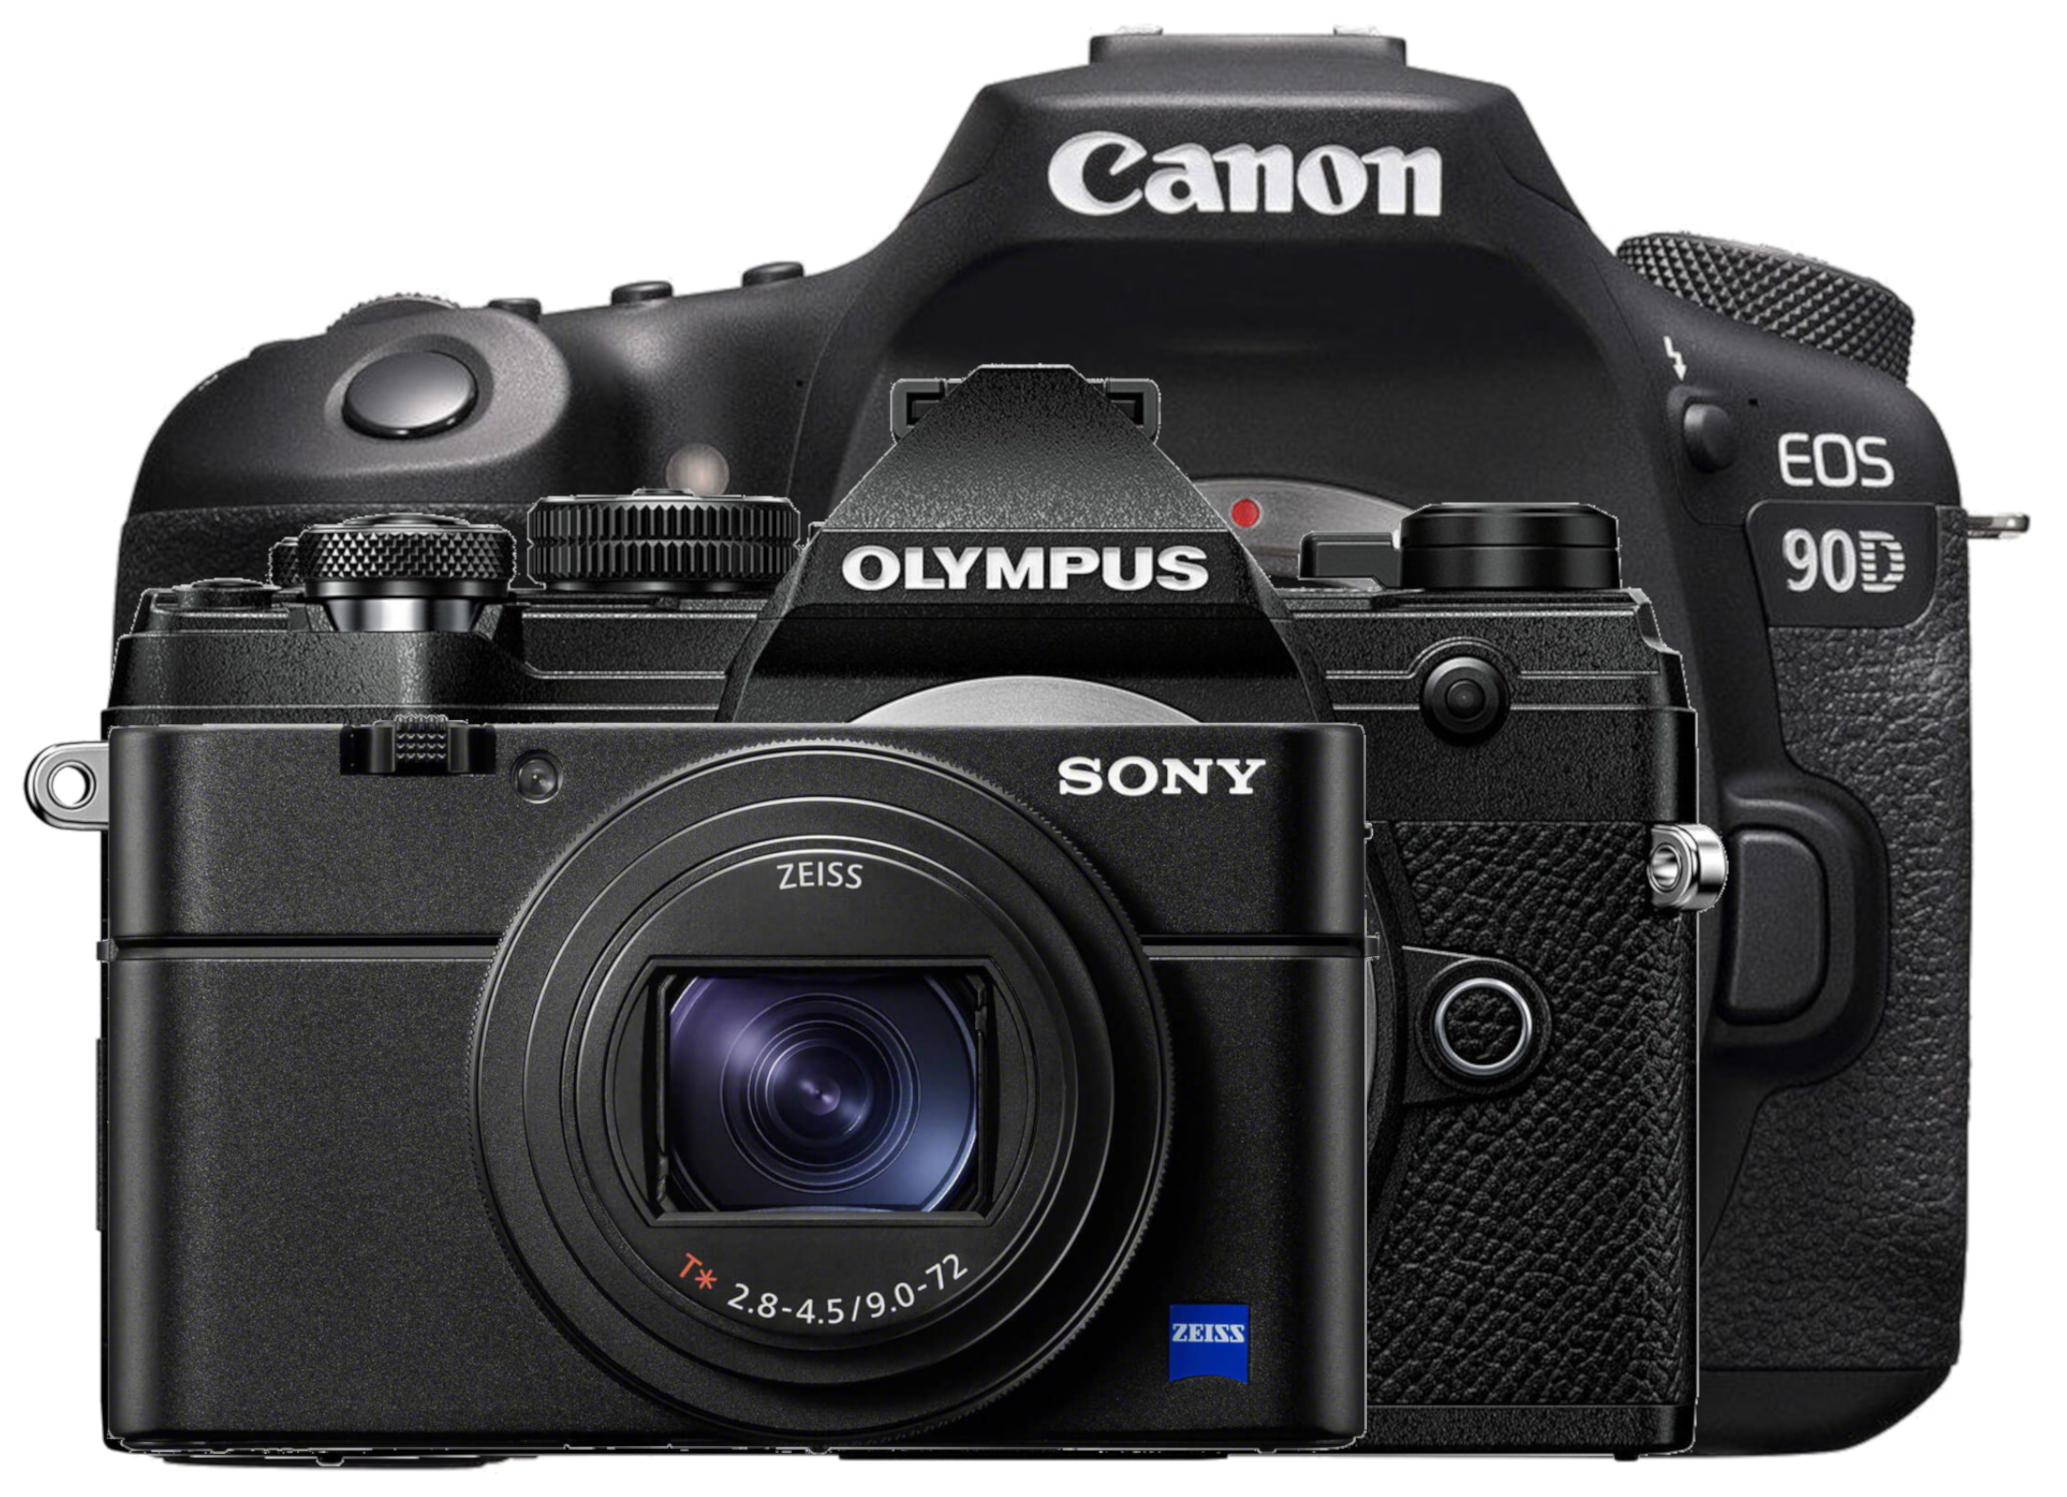 Olympus E-M5 Mark III vs Canon 90D vs Sony RX100 VII - 6